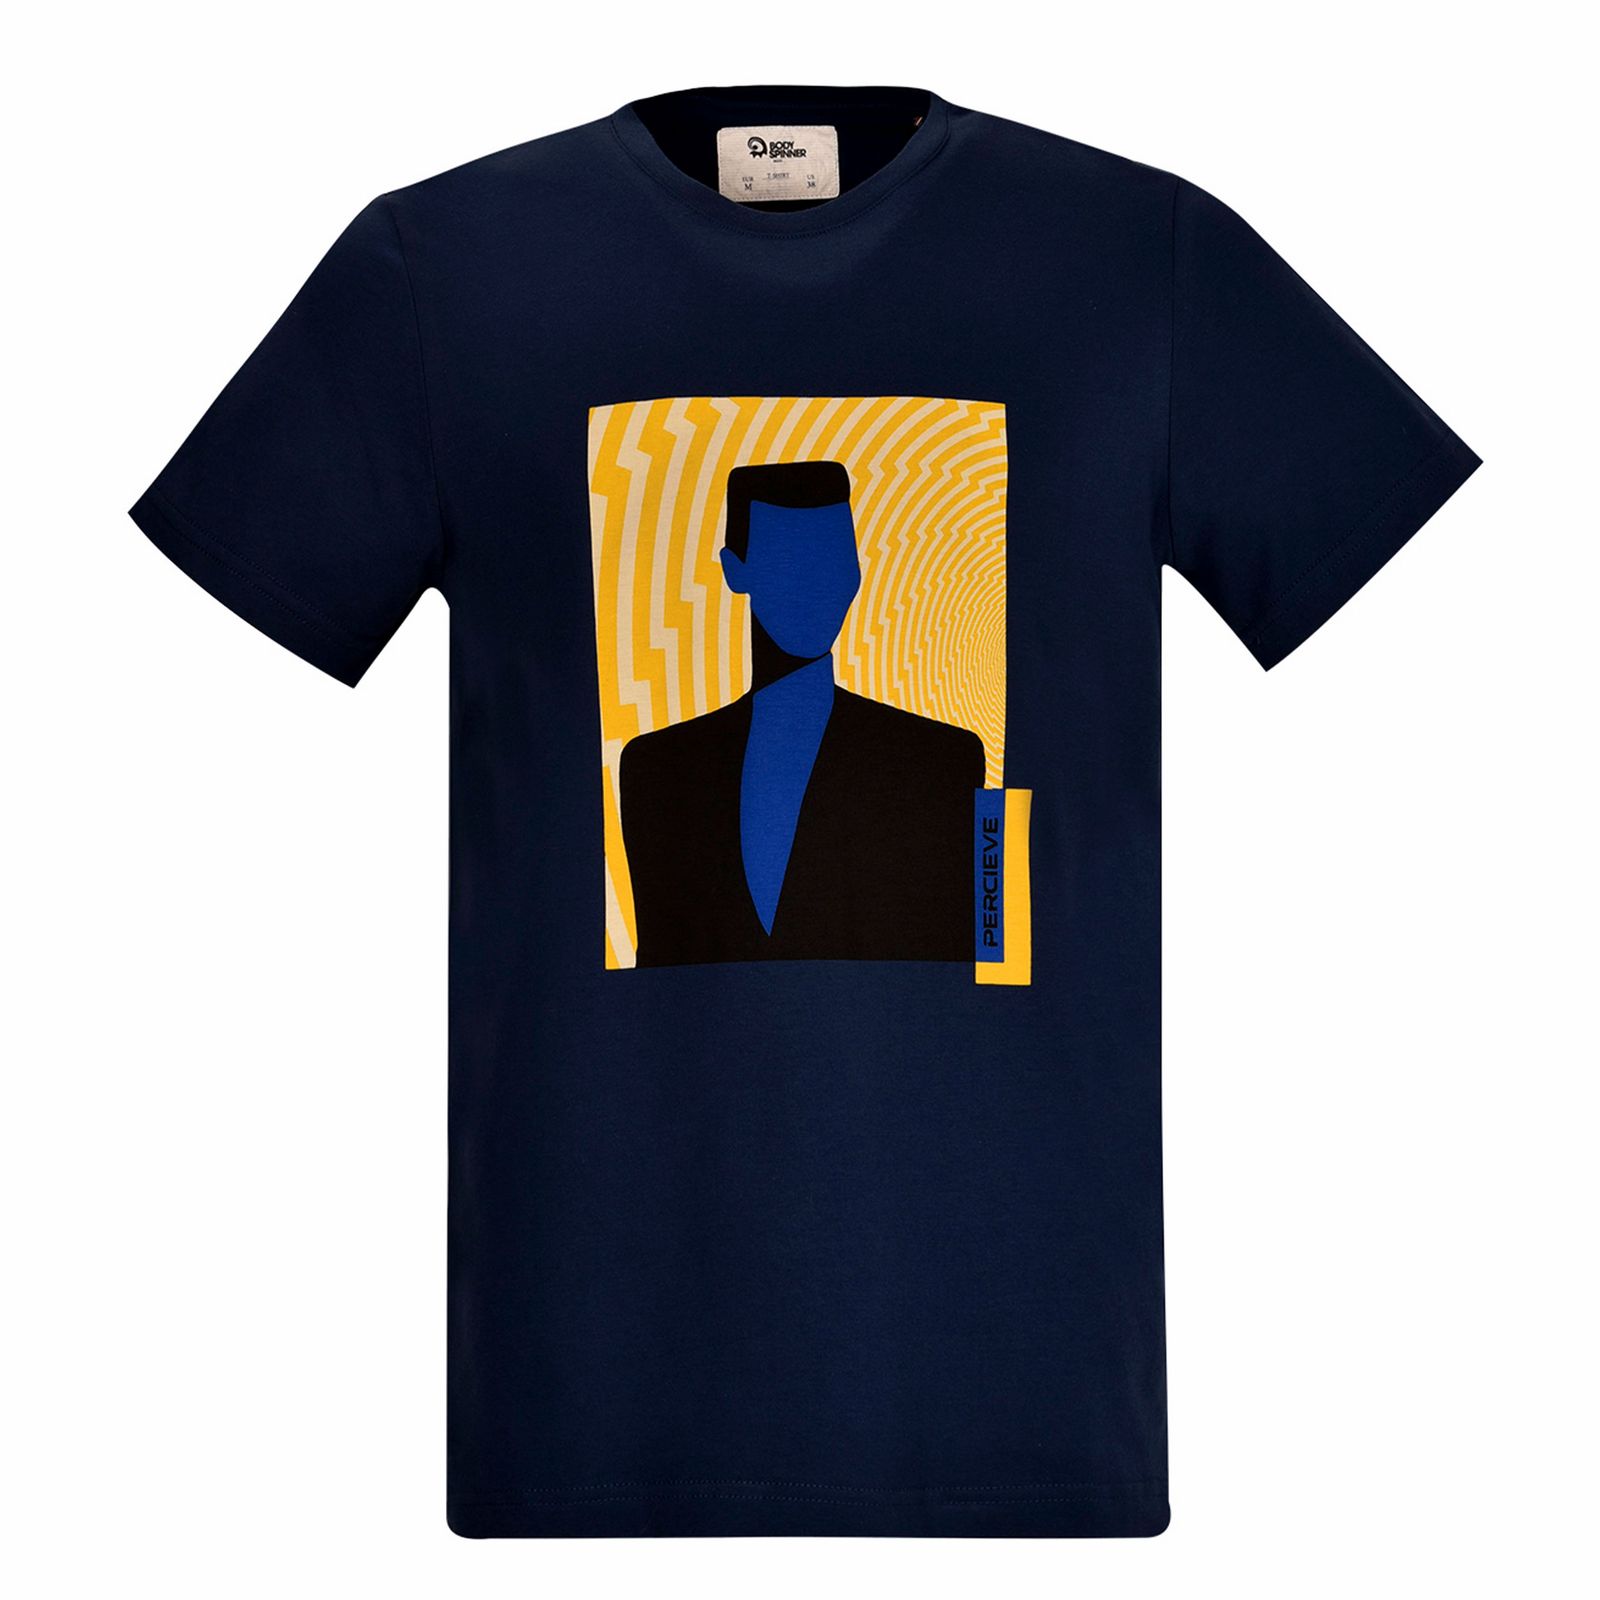 تی شرت آستین کوتاه مردانه بادی اسپینر مدل 3453 کد 2 رنگ سرمه ای -  - 1